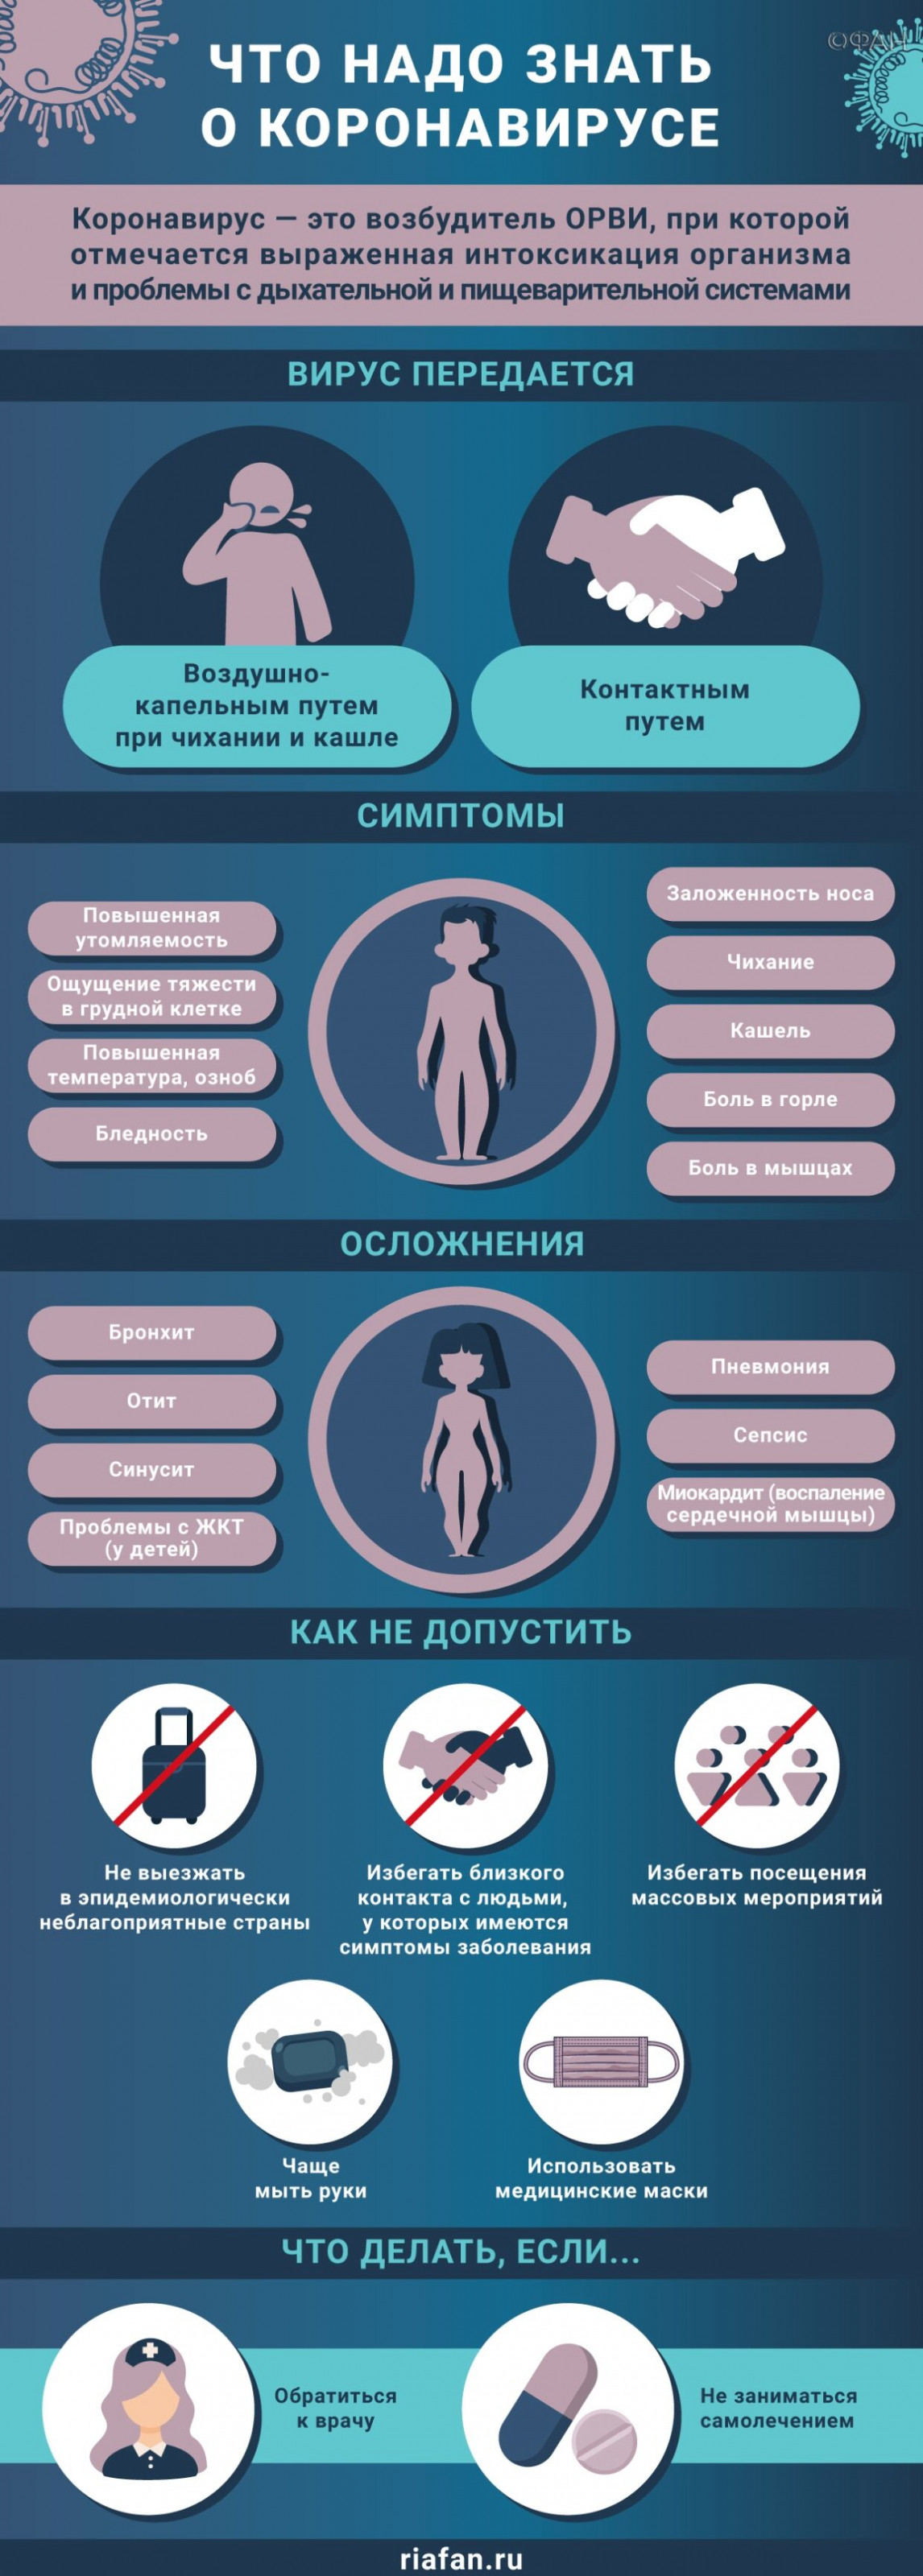 Врачи за сутки выявили еще 453 случая коронавируса в Петербурге